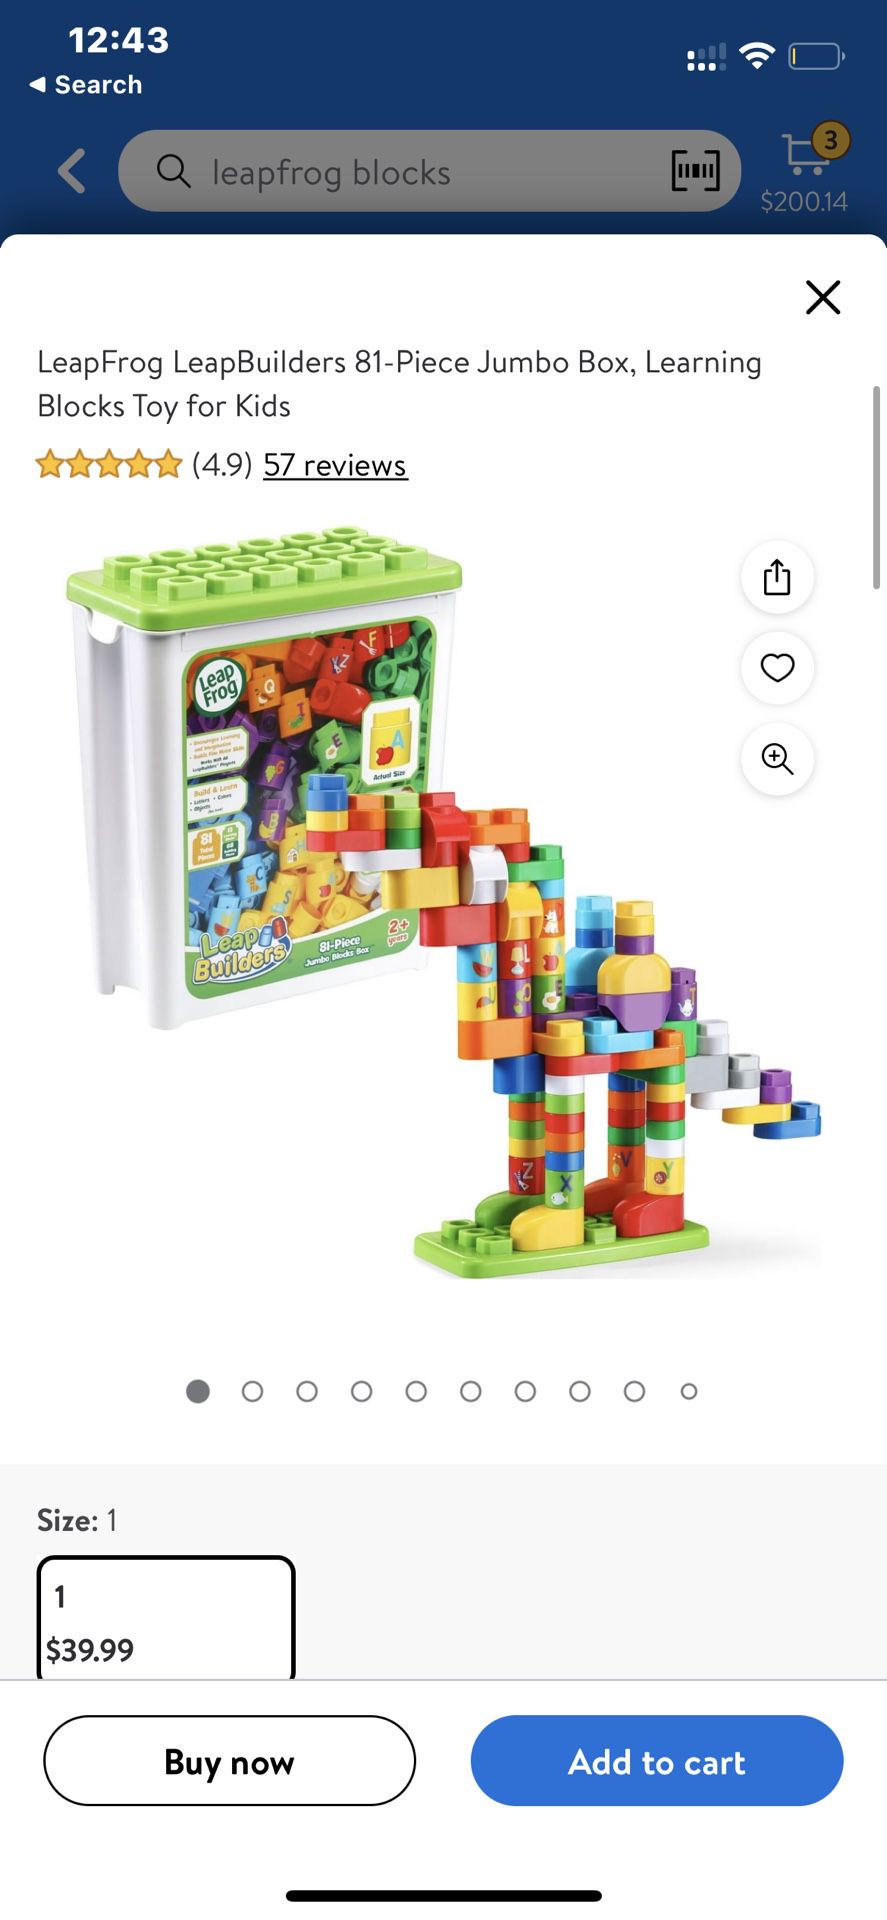 LeapFrog LeapBuilders 81-Piece Jumbo Box, Learning Blocks Toy for Kids